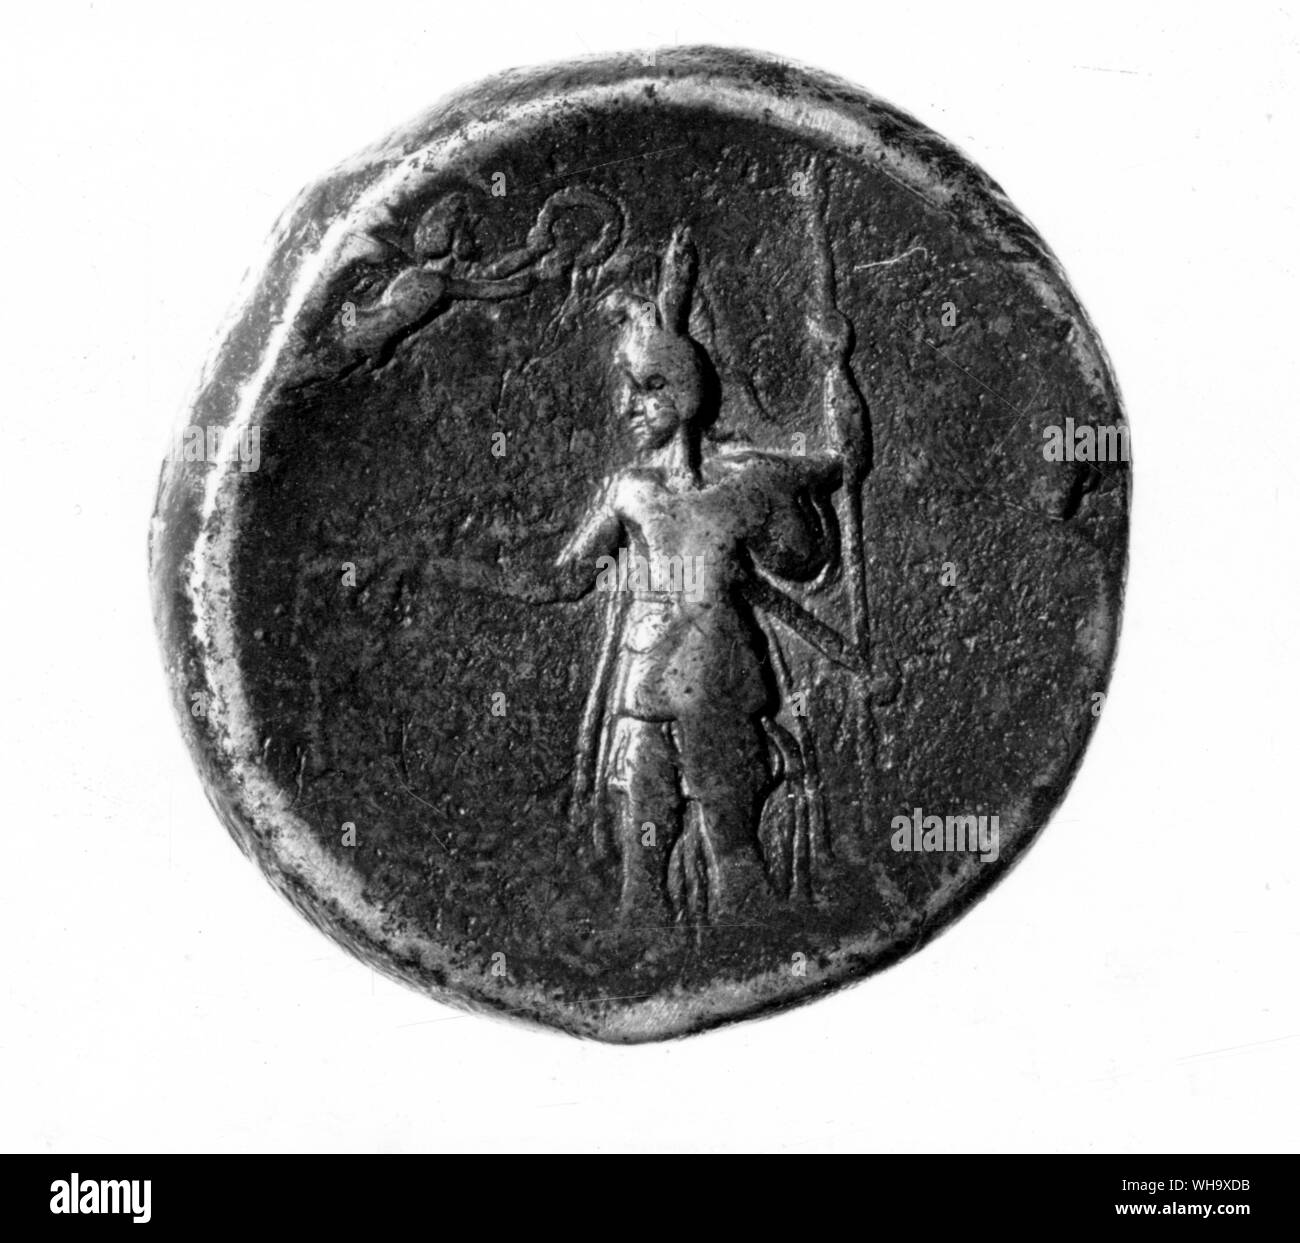 Una moneta commemorativa Alexander per la spedizione il Punjab e il suo defet di Porus. Alexander's casco è modellata su il persiano royal testa-abito, il picco kyrbasia, con pennacchio aggiunto Foto Stock